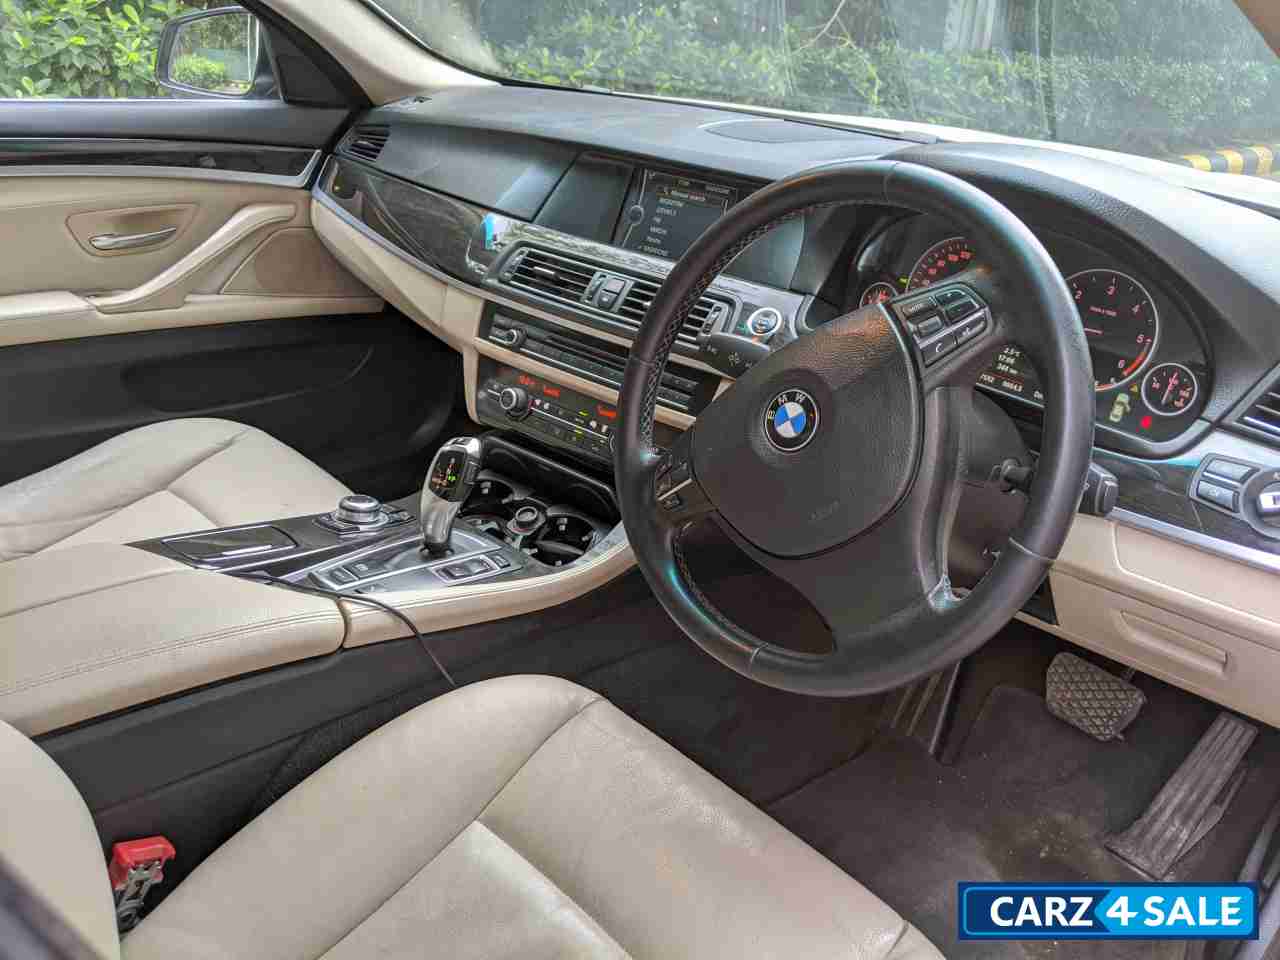 BMW 5-Series 520d Luxury Line Diesel AT